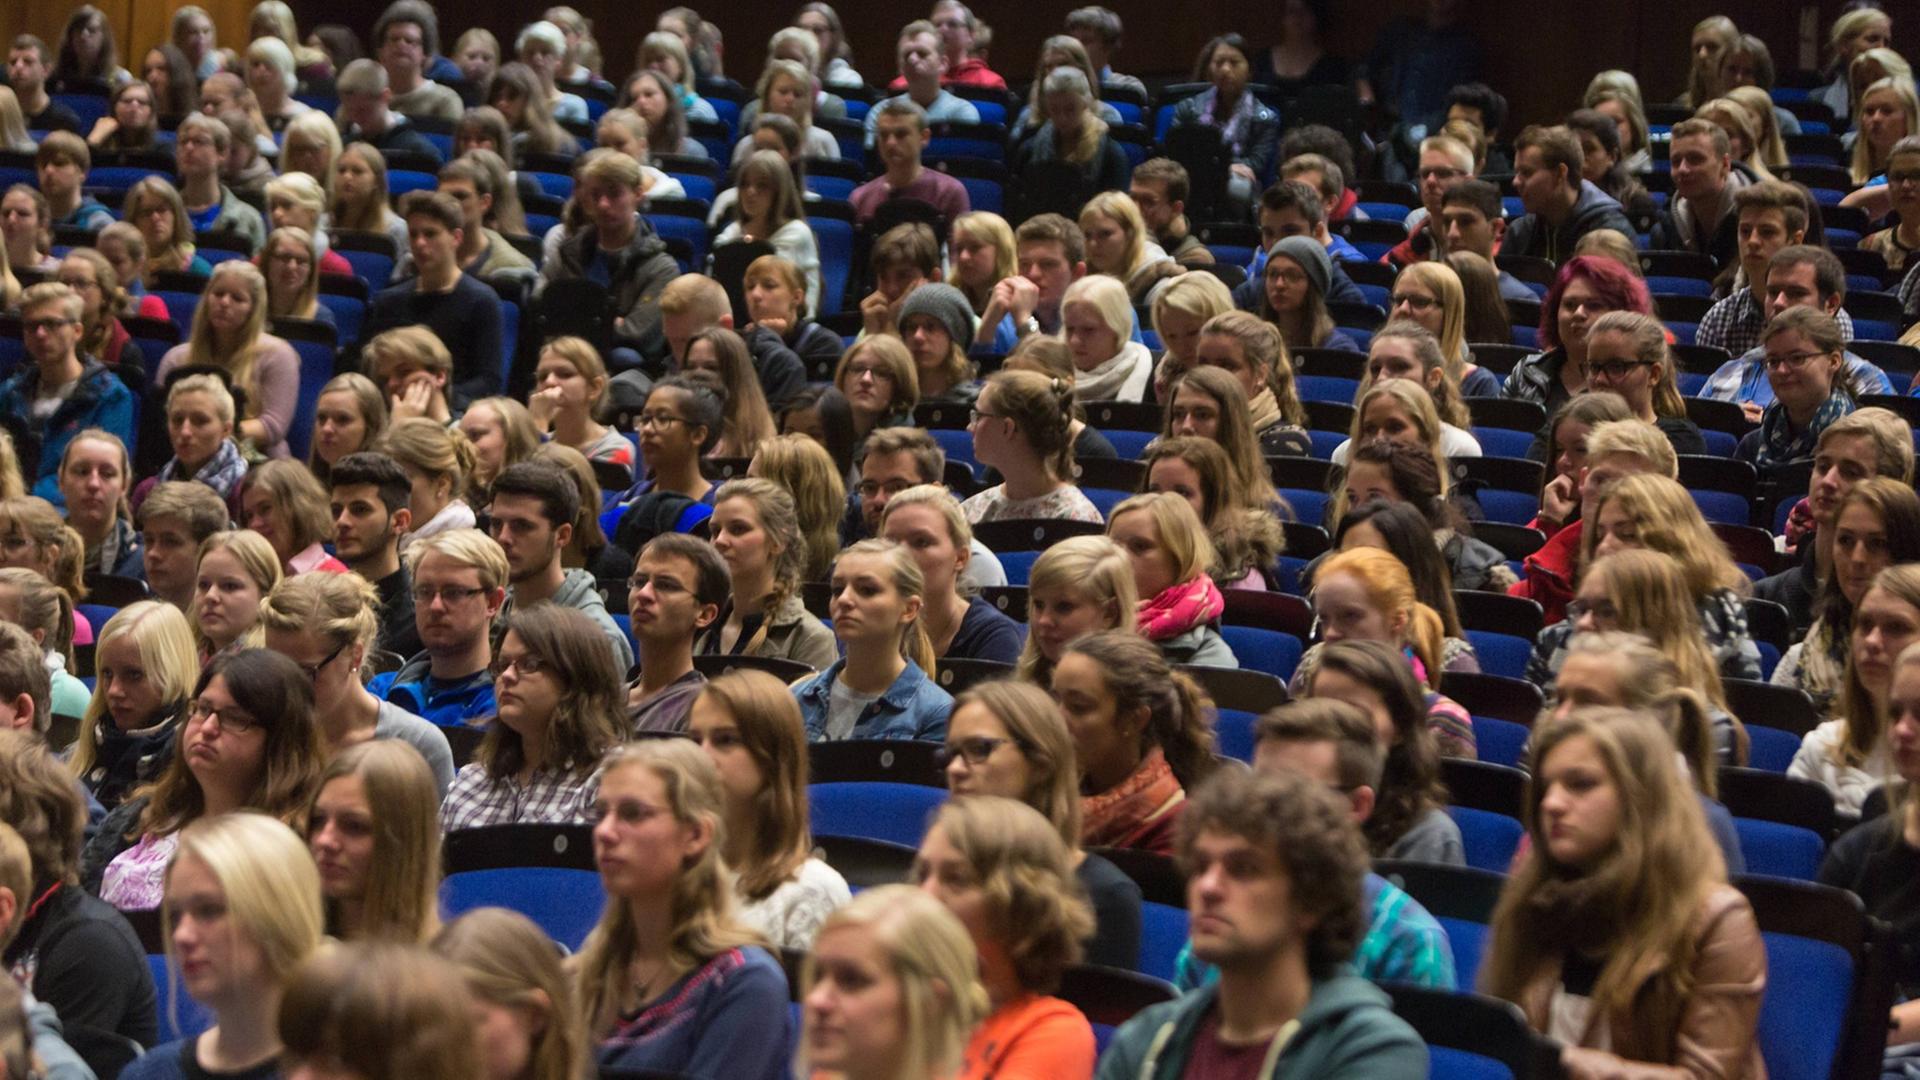 Begrüßung der Erstsemester an der Westfälische-Wilhelms-Universität in Münster. 5400 Studenten haben zum Wintersemester 2014/2015 ihr Studium aufgenommen